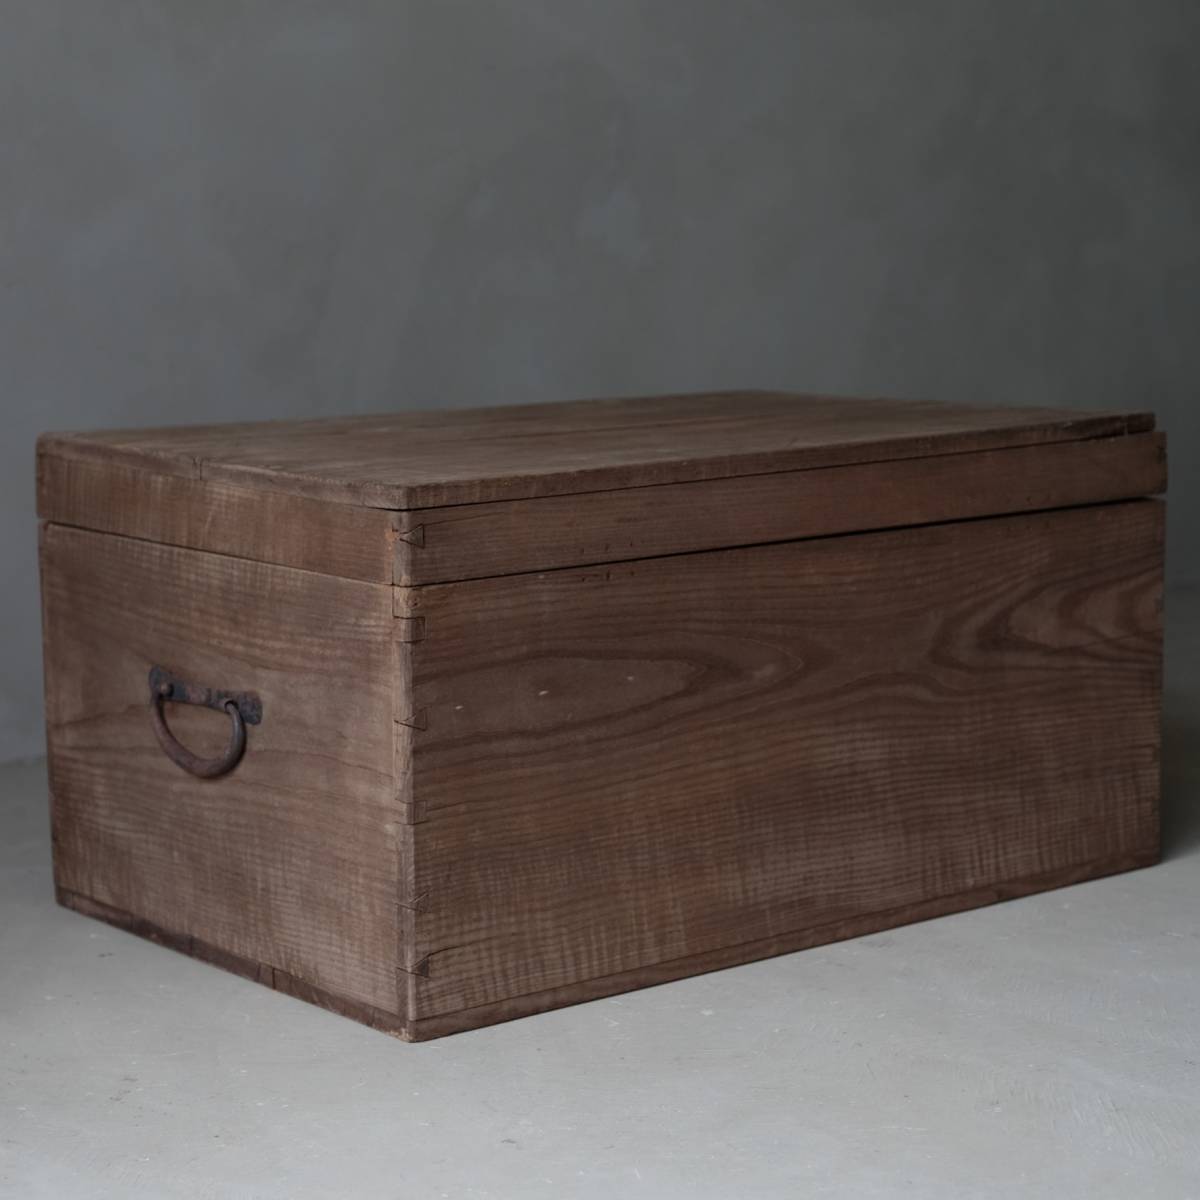 02570 штекер материал ... крышка есть дерево коробка / багажник ящик для одежды место хранения коробка старый мебель старый инструмент античный 